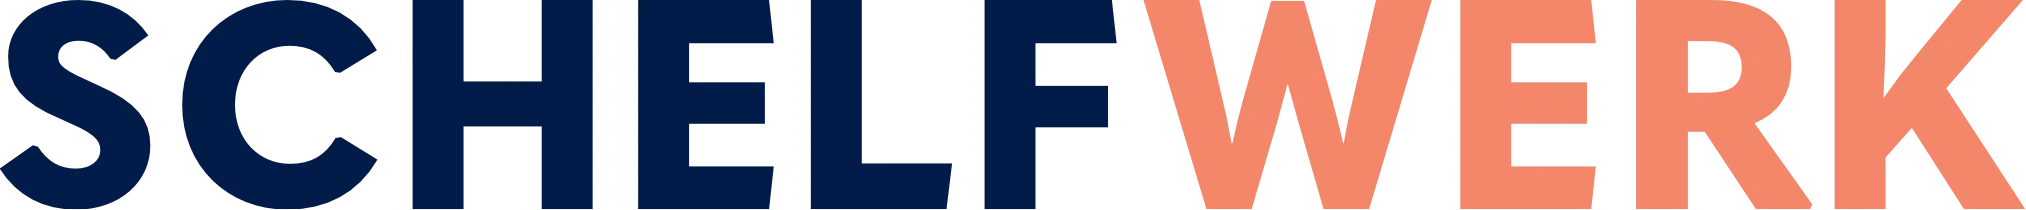 SCHELFWERK Logo blau orange